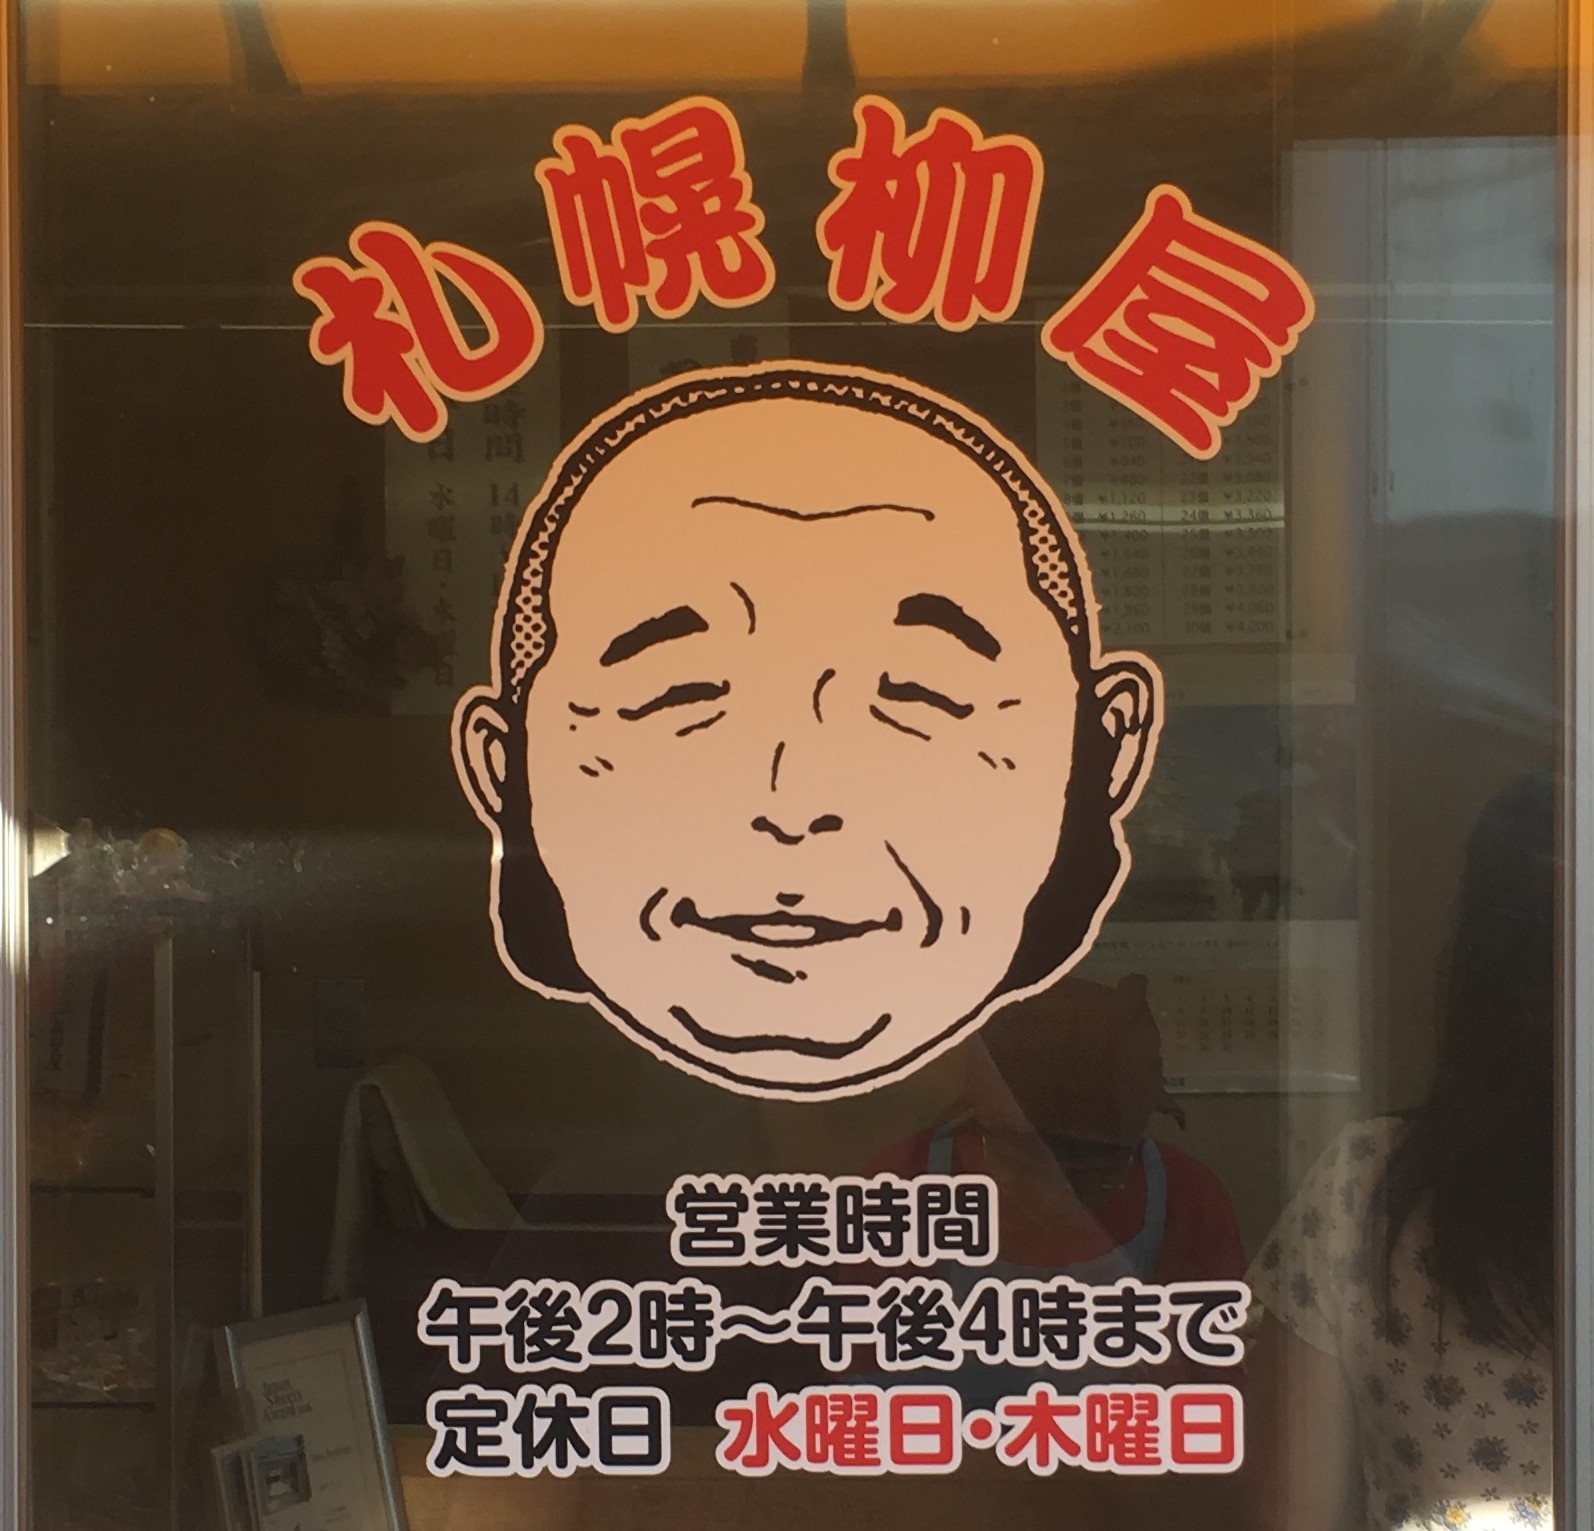 窓に札幌柳屋のロゴ、営業時間、定休日の表記